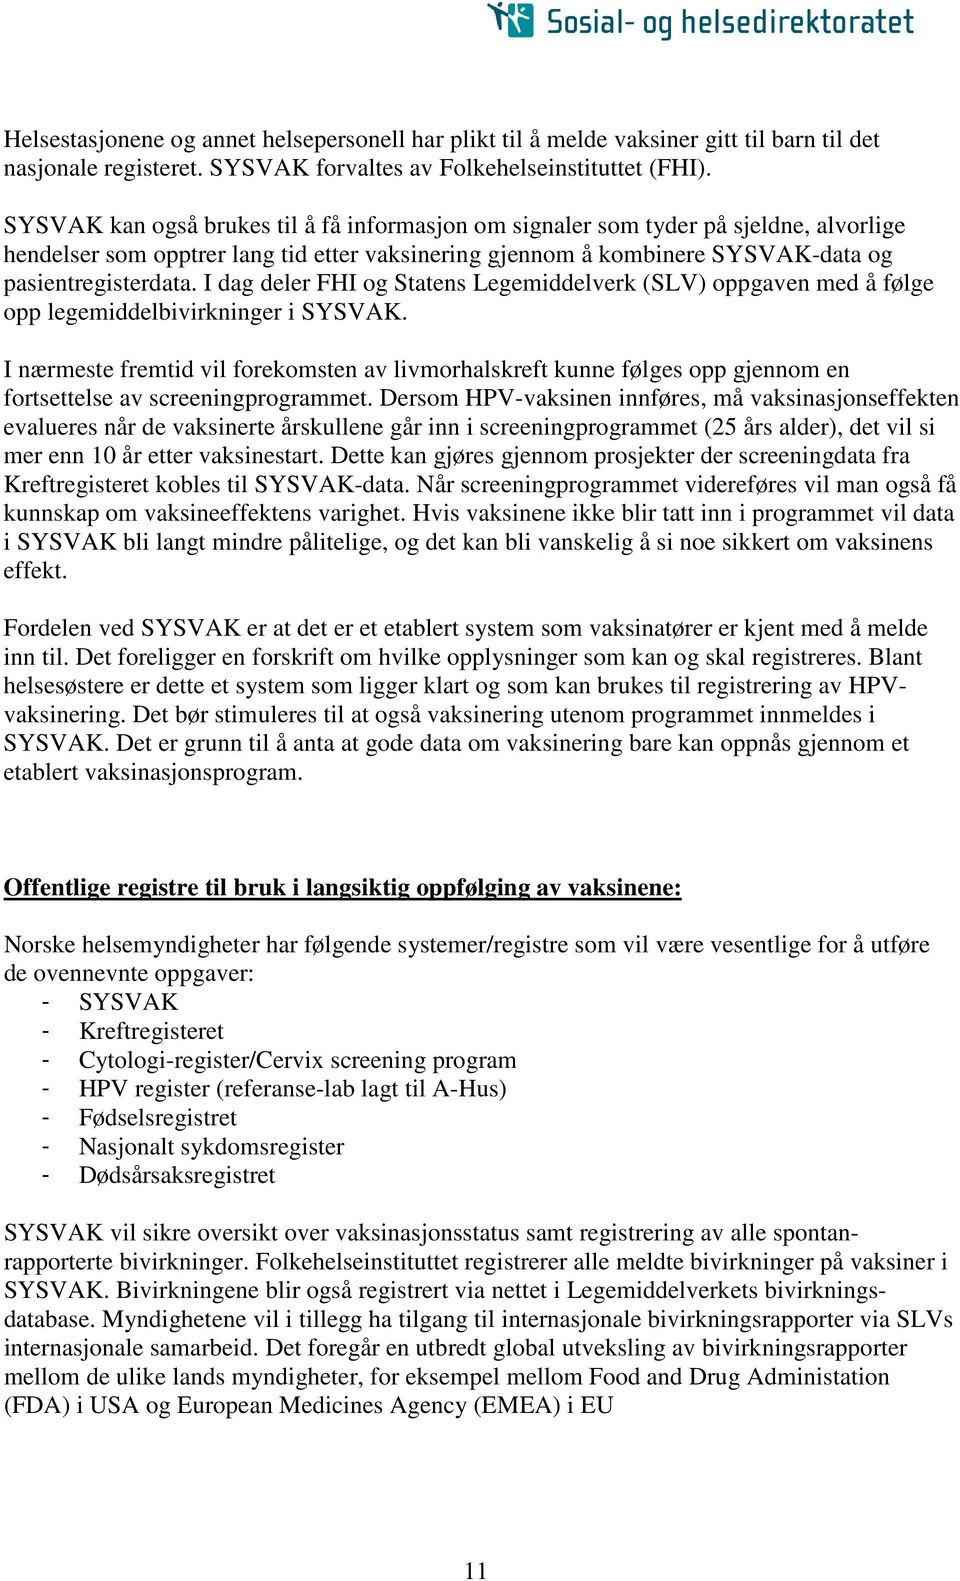 I dag deler FHI og Statens Legemiddelverk (SLV) oppgaven med å følge opp legemiddelbivirkninger i SYSVAK.